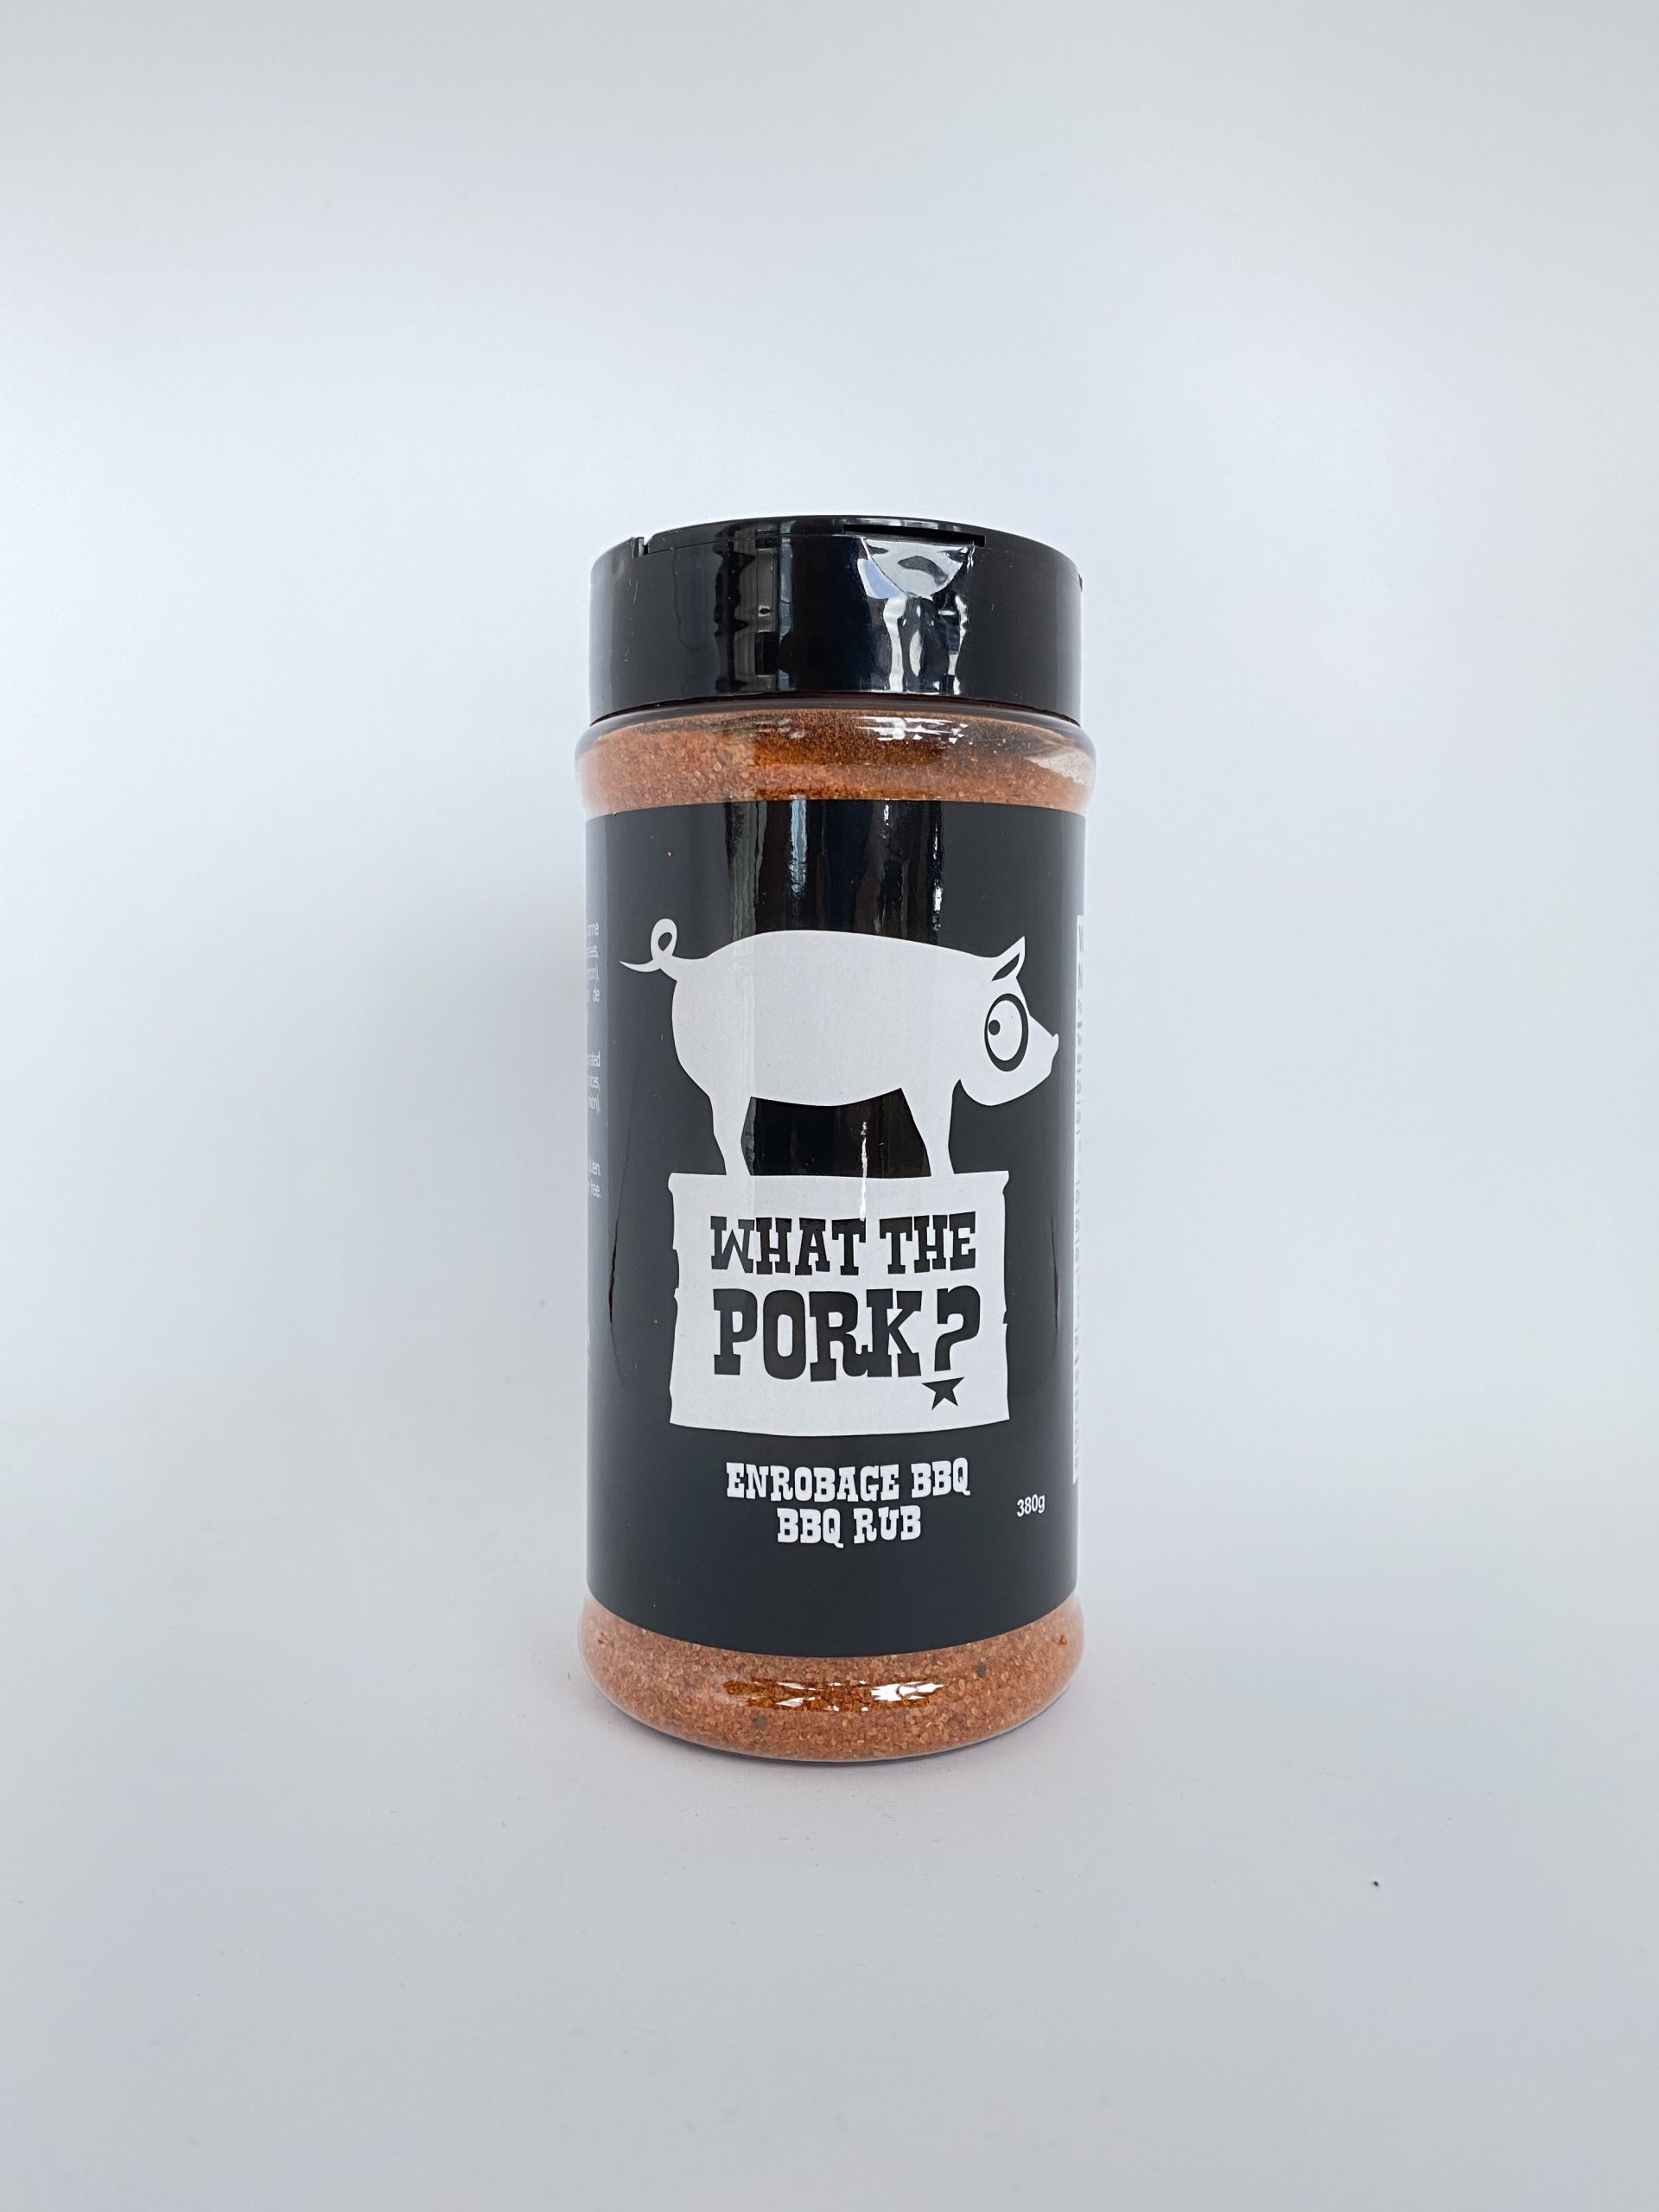 What the Pork? Épices à frotter BBQ - Espace Houblon